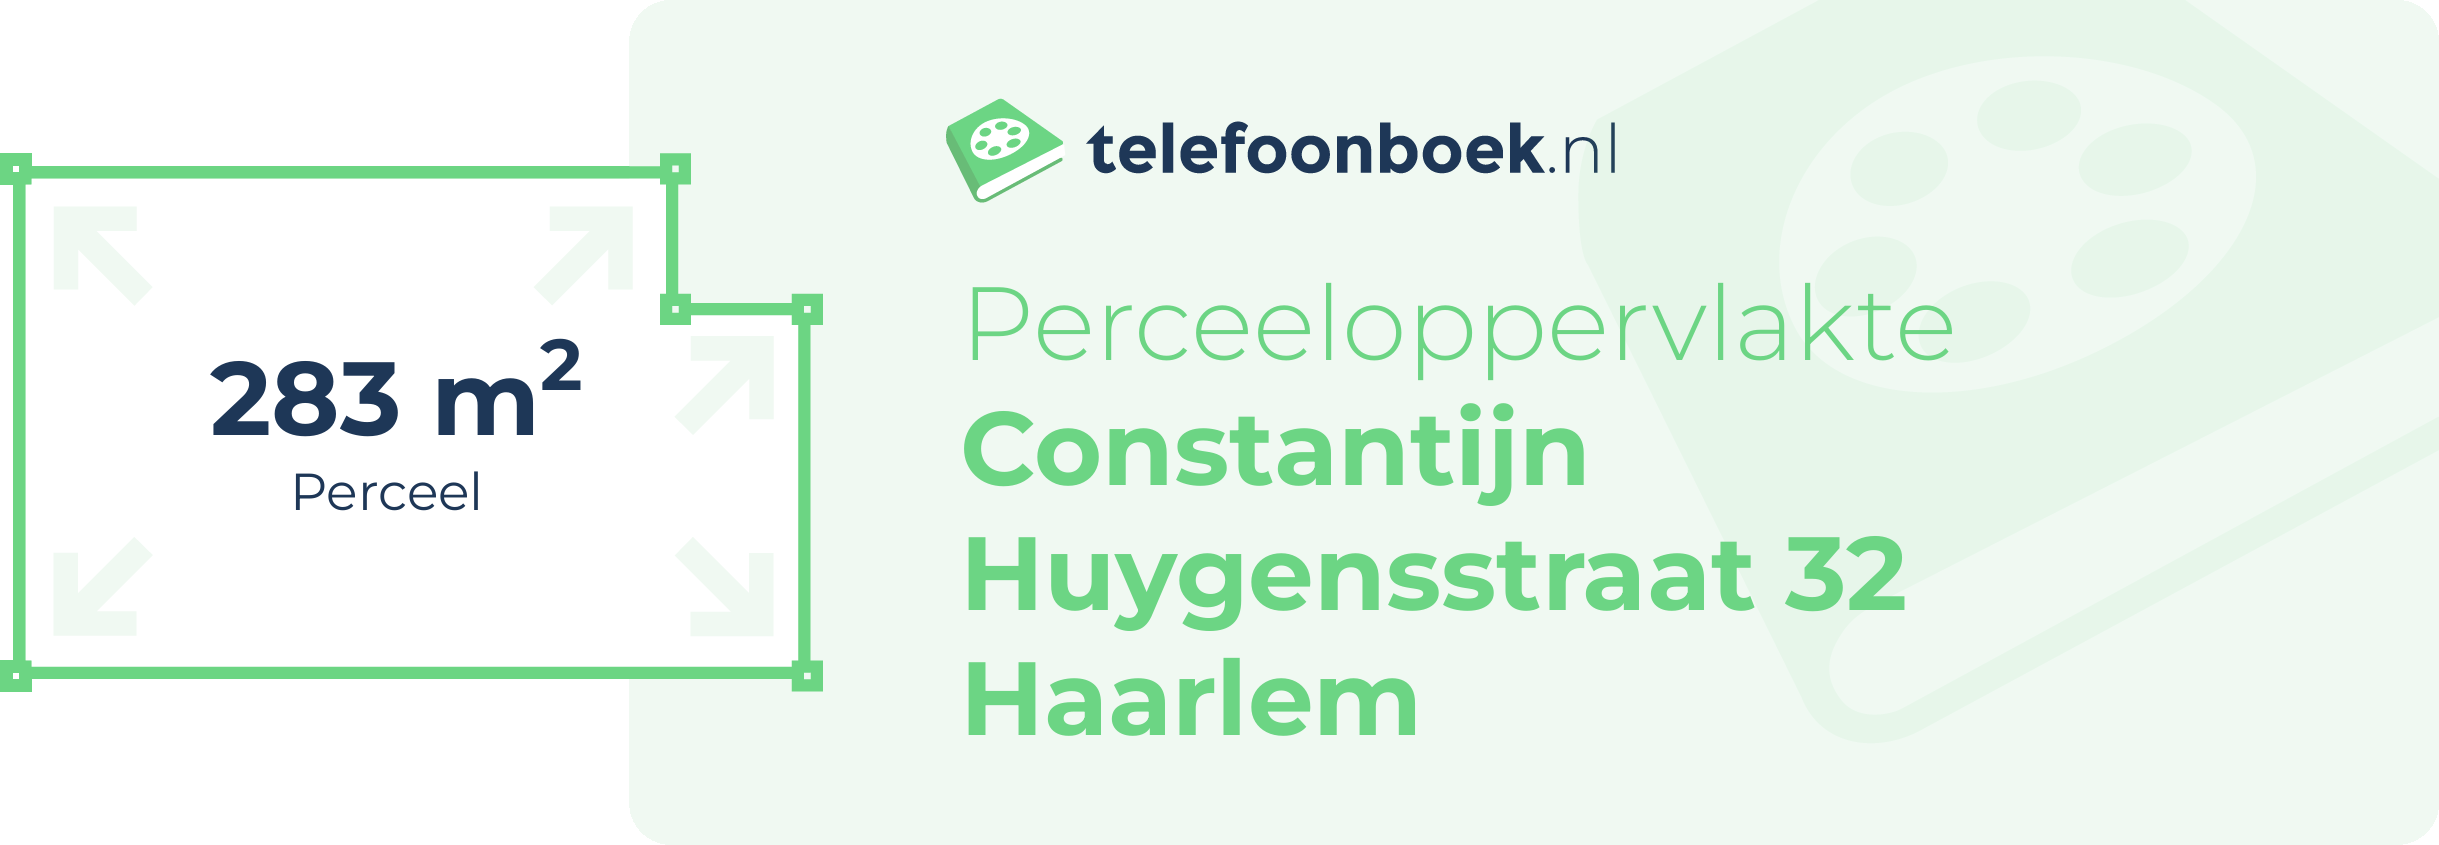 Perceeloppervlakte Constantijn Huygensstraat 32 Haarlem